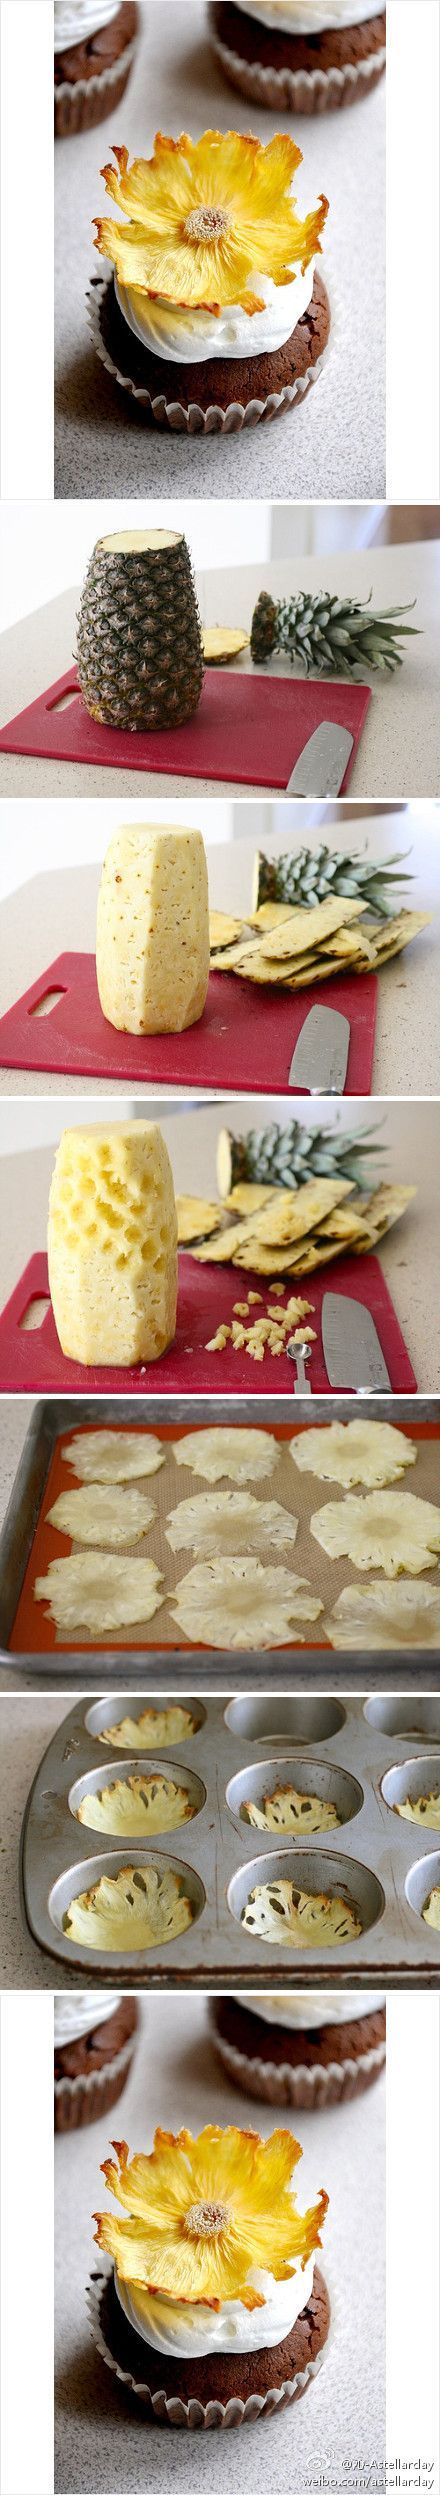 DIY pineapple flowers – a simple & sweet cupcake topper. #sweet #bake